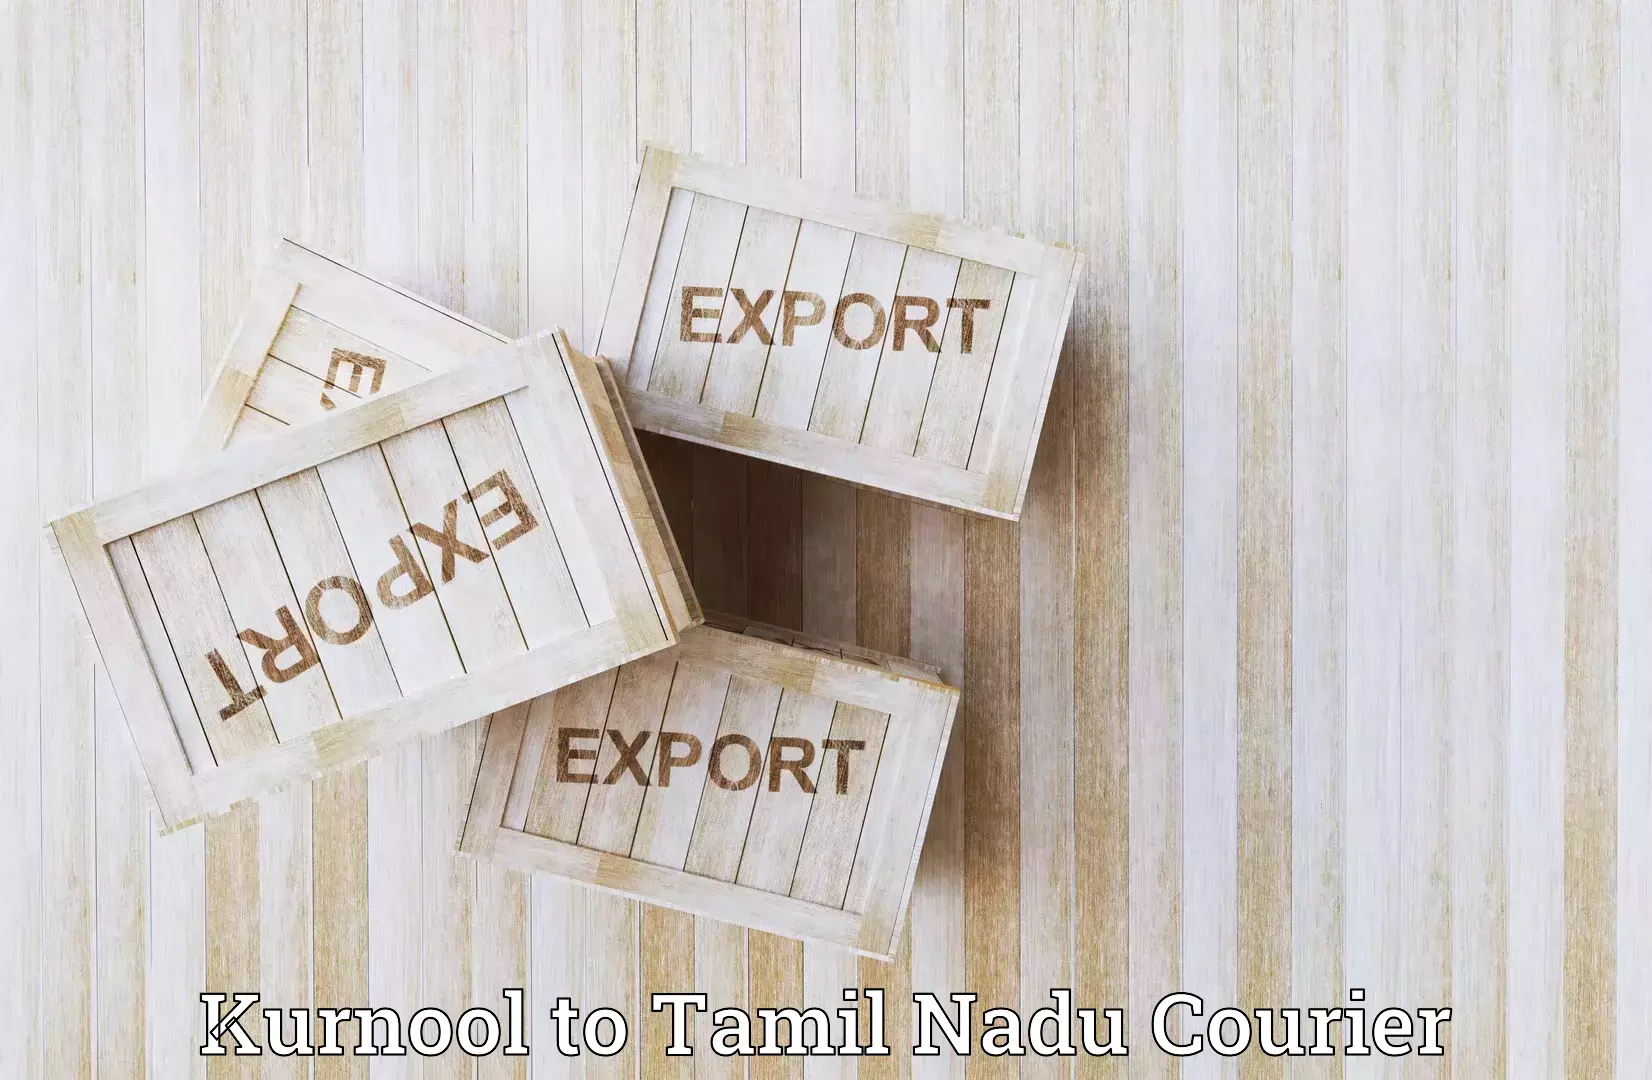 Efficient logistics management Kurnool to Tamil Nadu